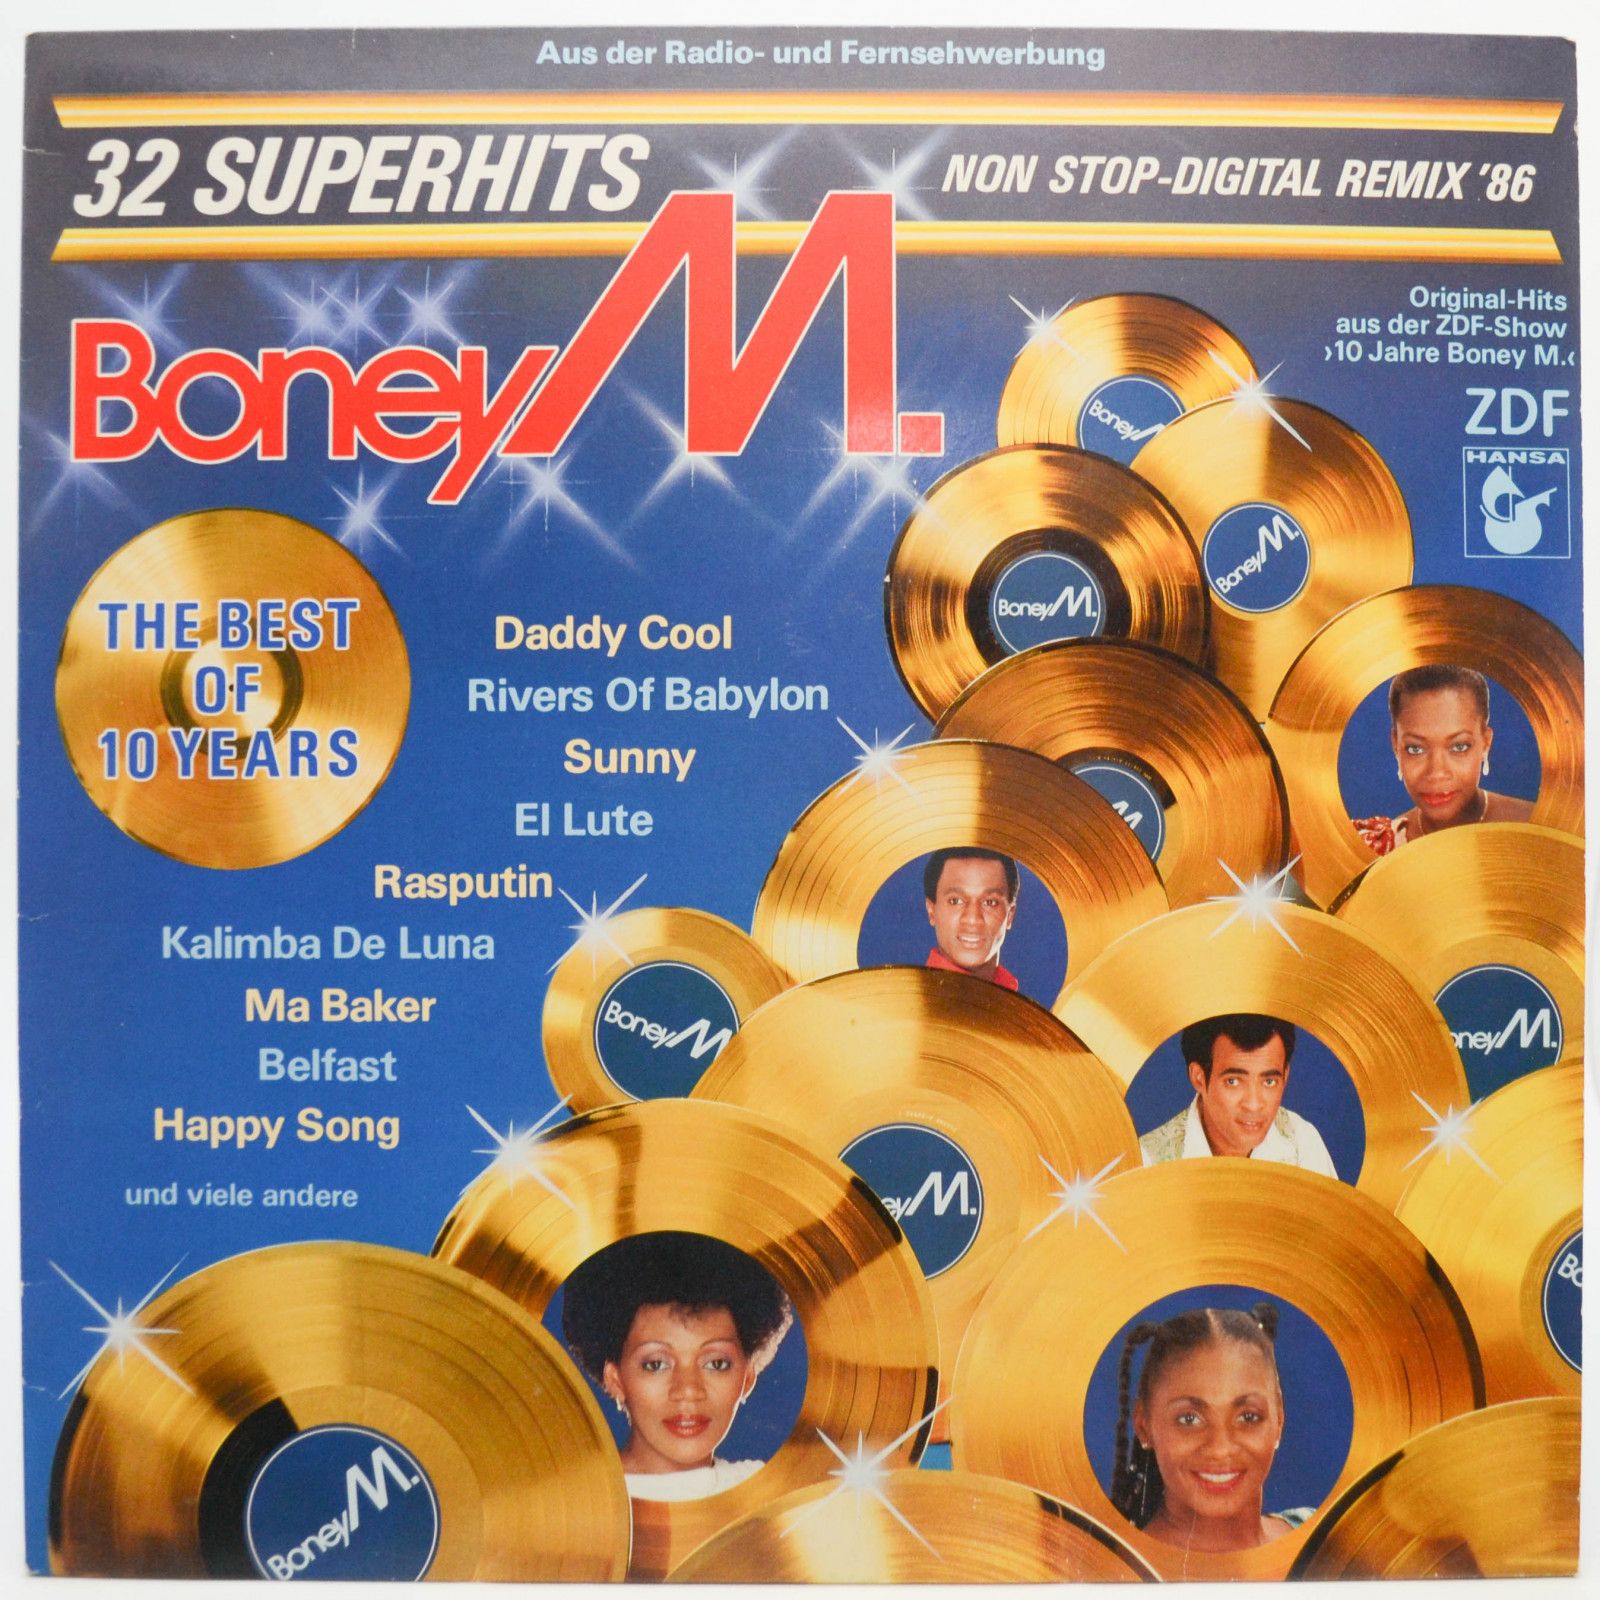 Boney M. — The Best Of 10 Years, 1986